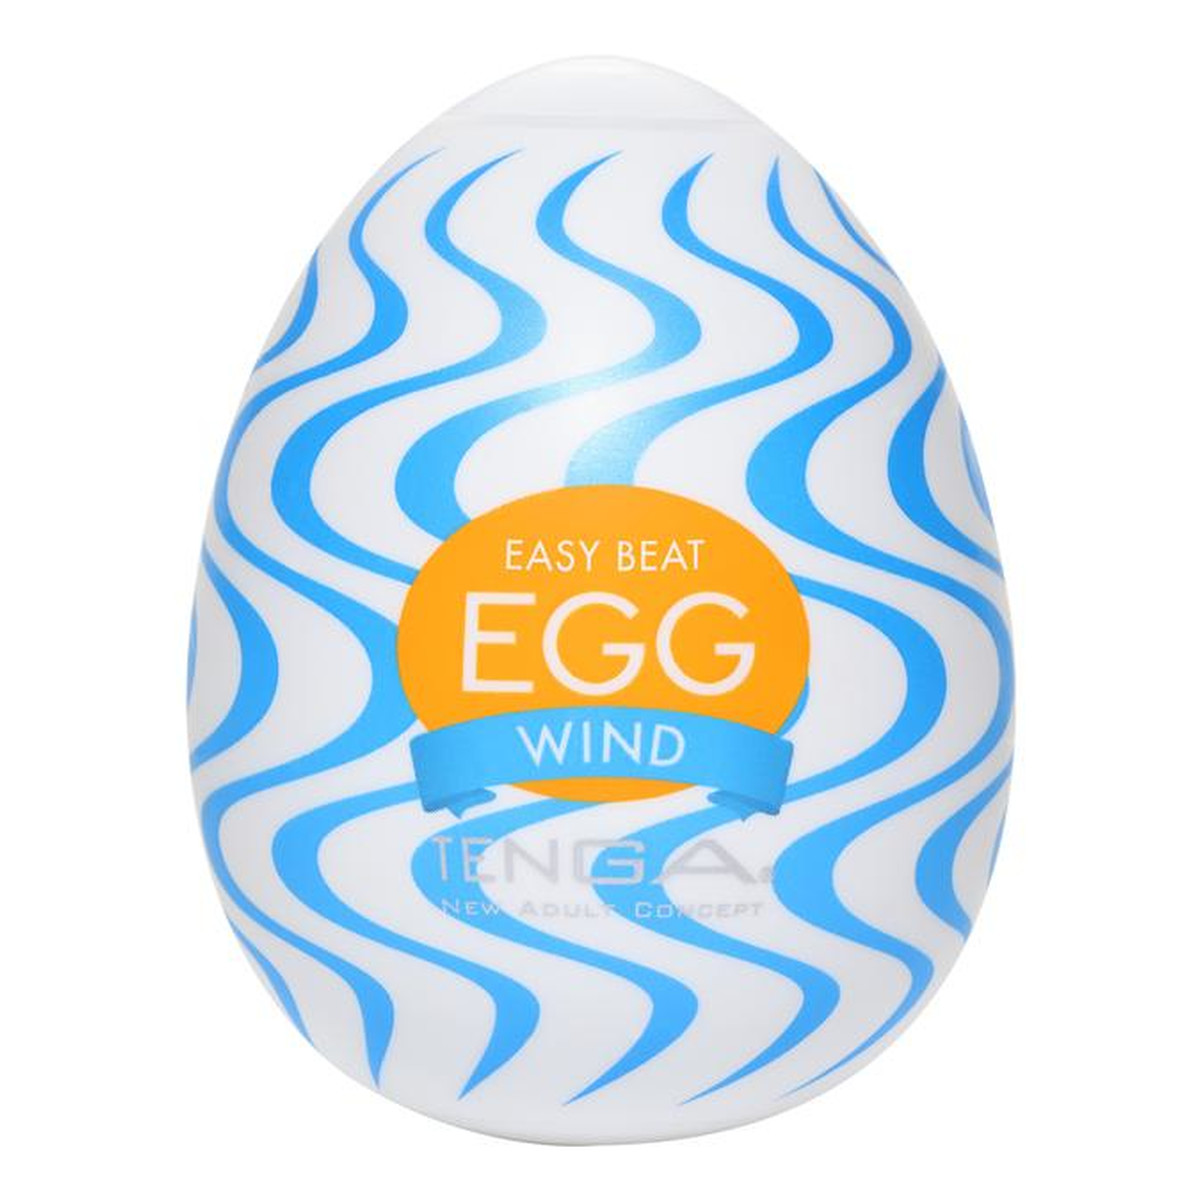 Tenga Easy beat egg wind jednorazowy masturbator w kształcie jajka